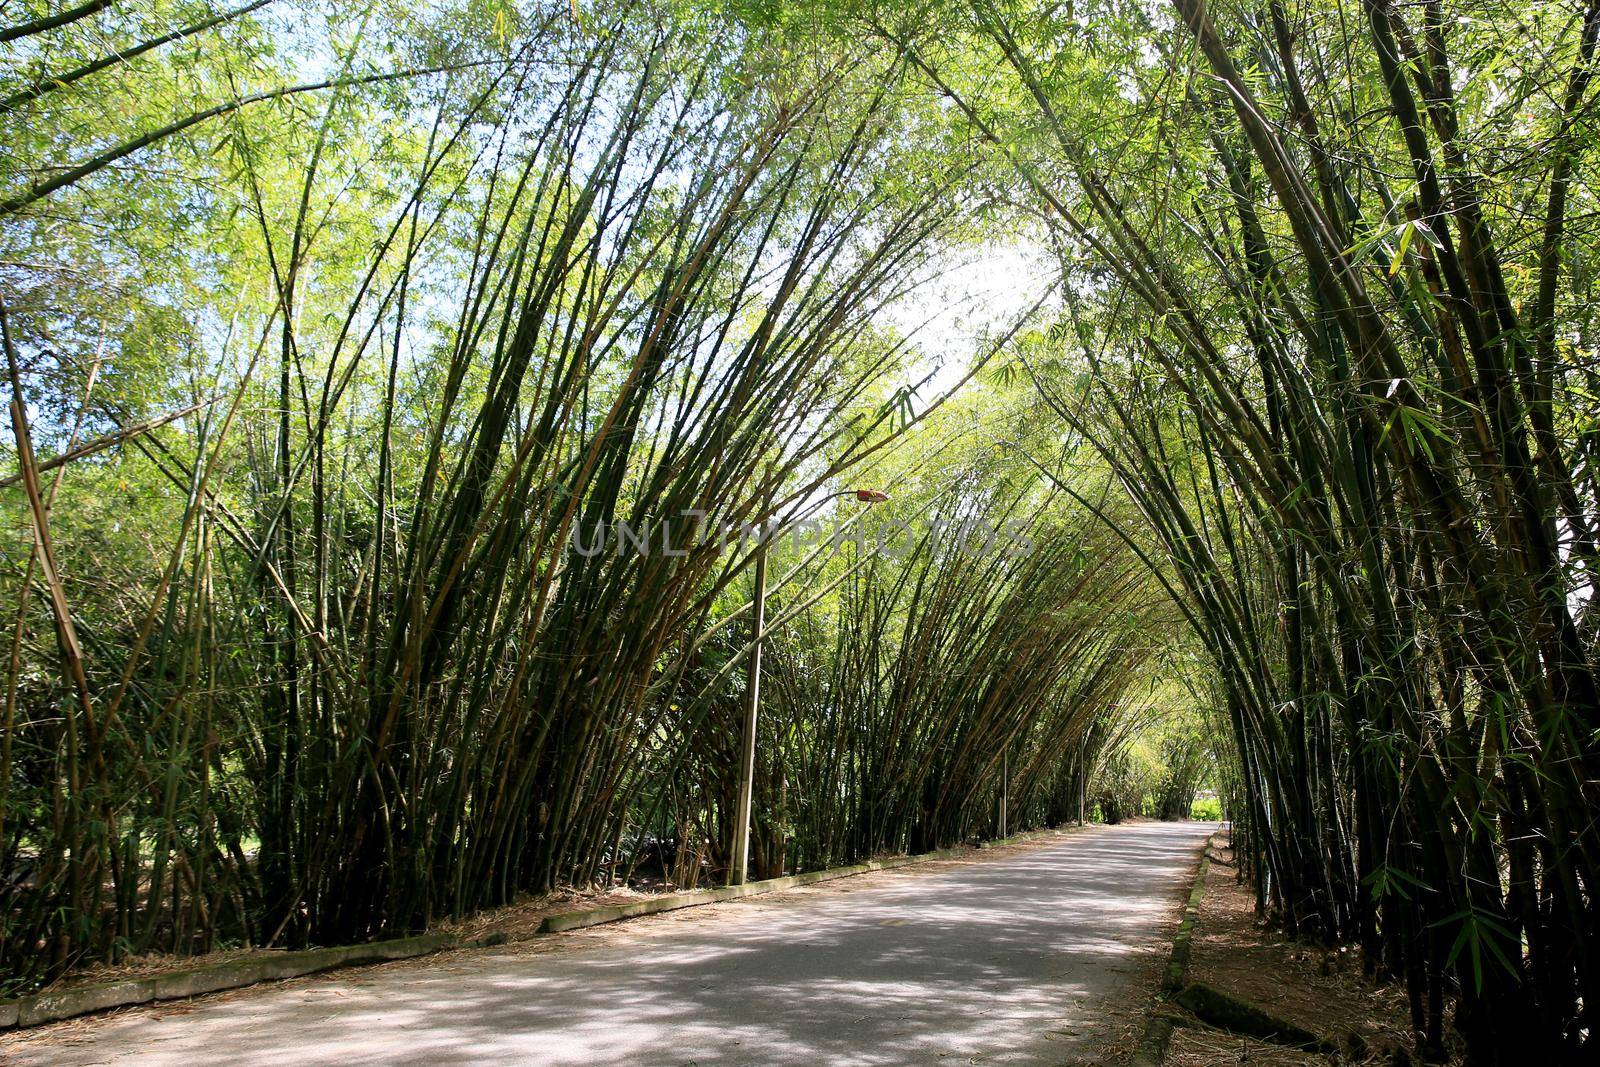 mata de sao joao, bahia / brazil - september 23, 2020: bamboos are seen at the entrance to the district of Sauipe in the municipality of Mata de Sao Joao.